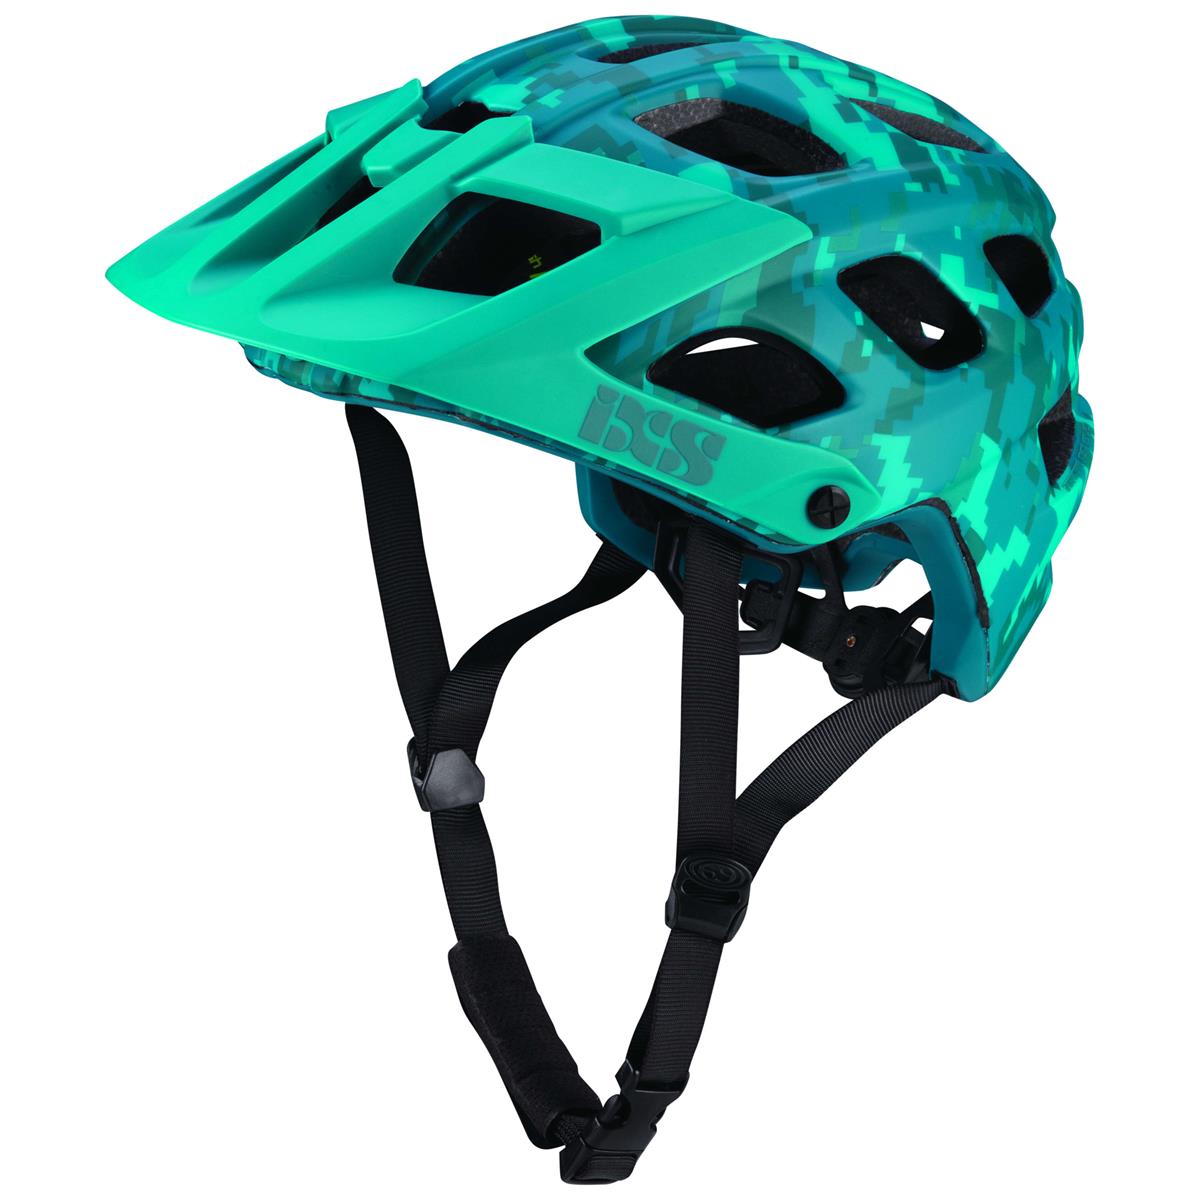 IXS Enduro MTB-Helm Trail RS EVO Lagoon - Camo Limited Edition